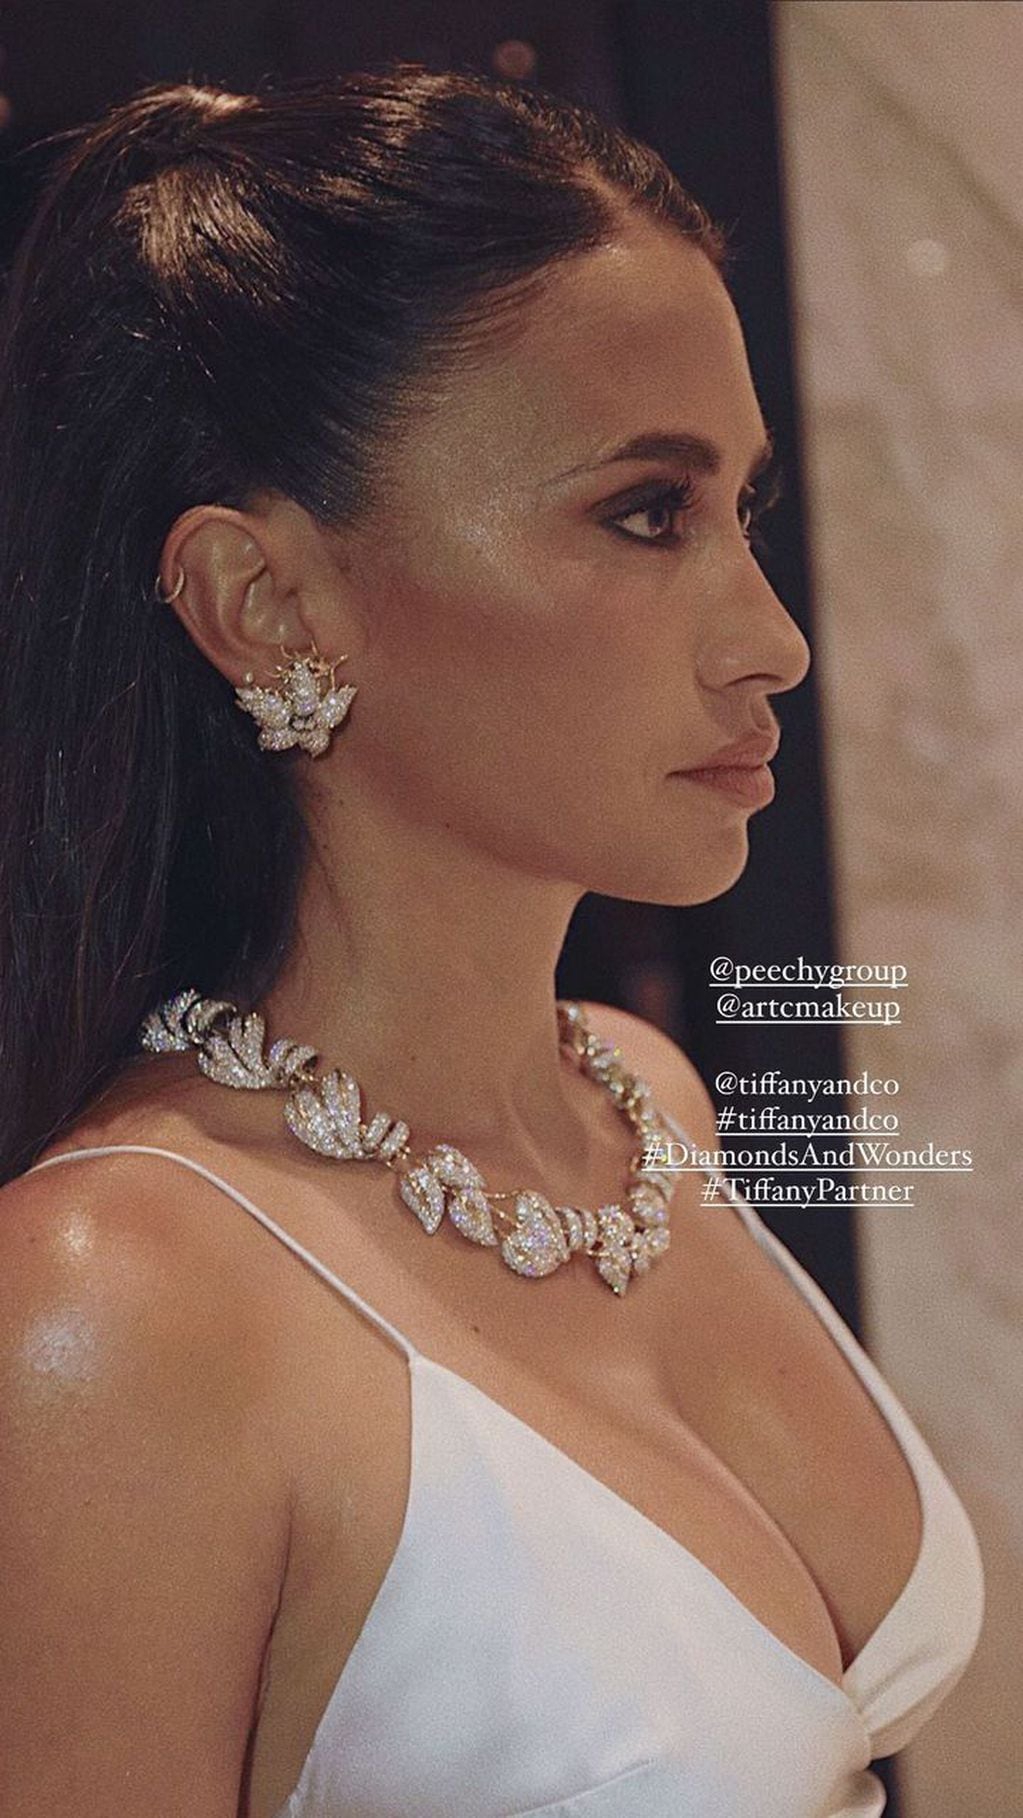 Antonela Roccuzzo publicó una foto del maquillaje y las joyas que usó en la ciudad de México para un evento de Tiffany.